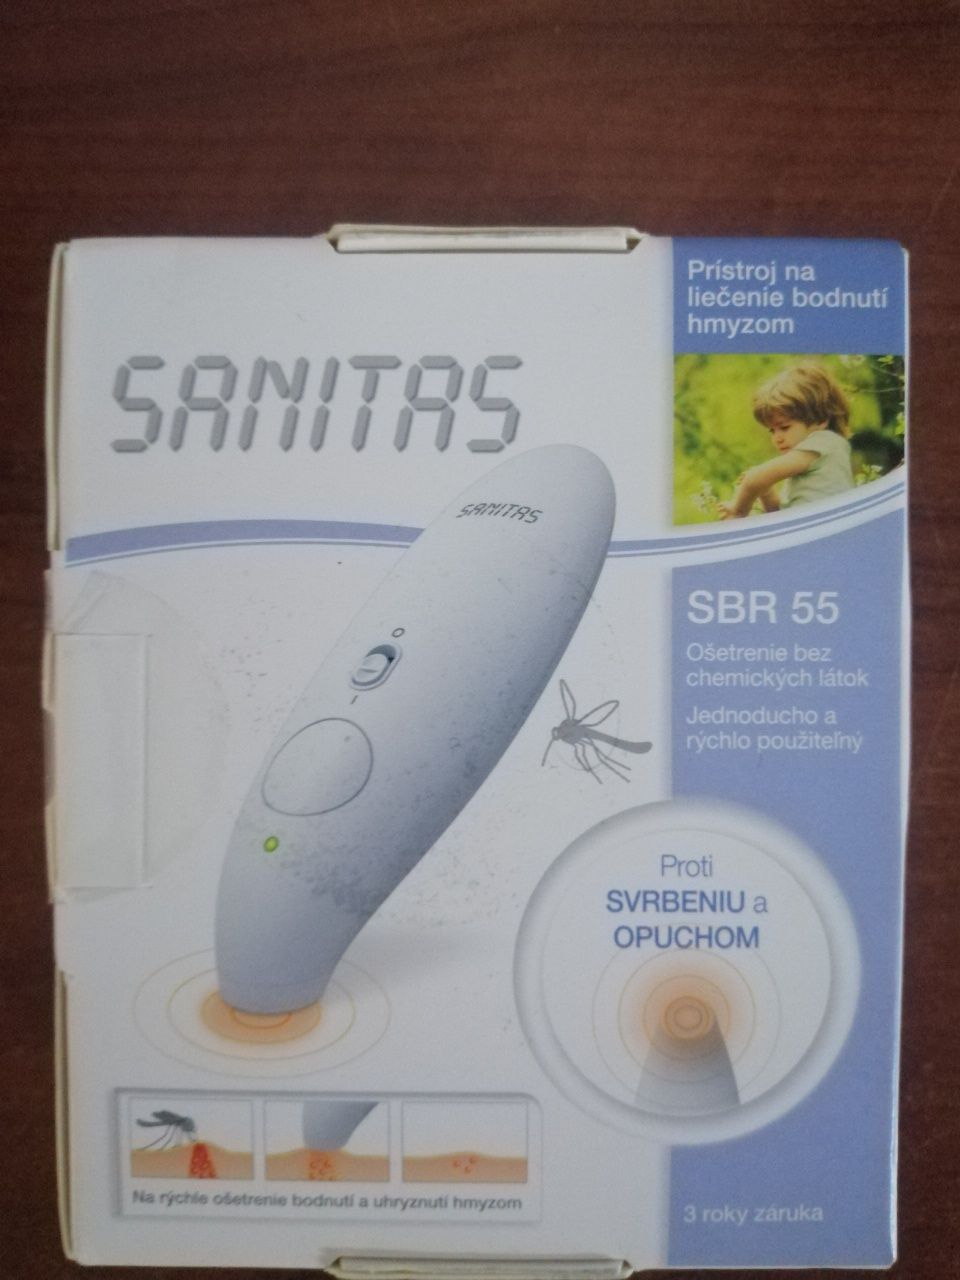 Sanitas SBR 55 urządzenie uśmierzające ból